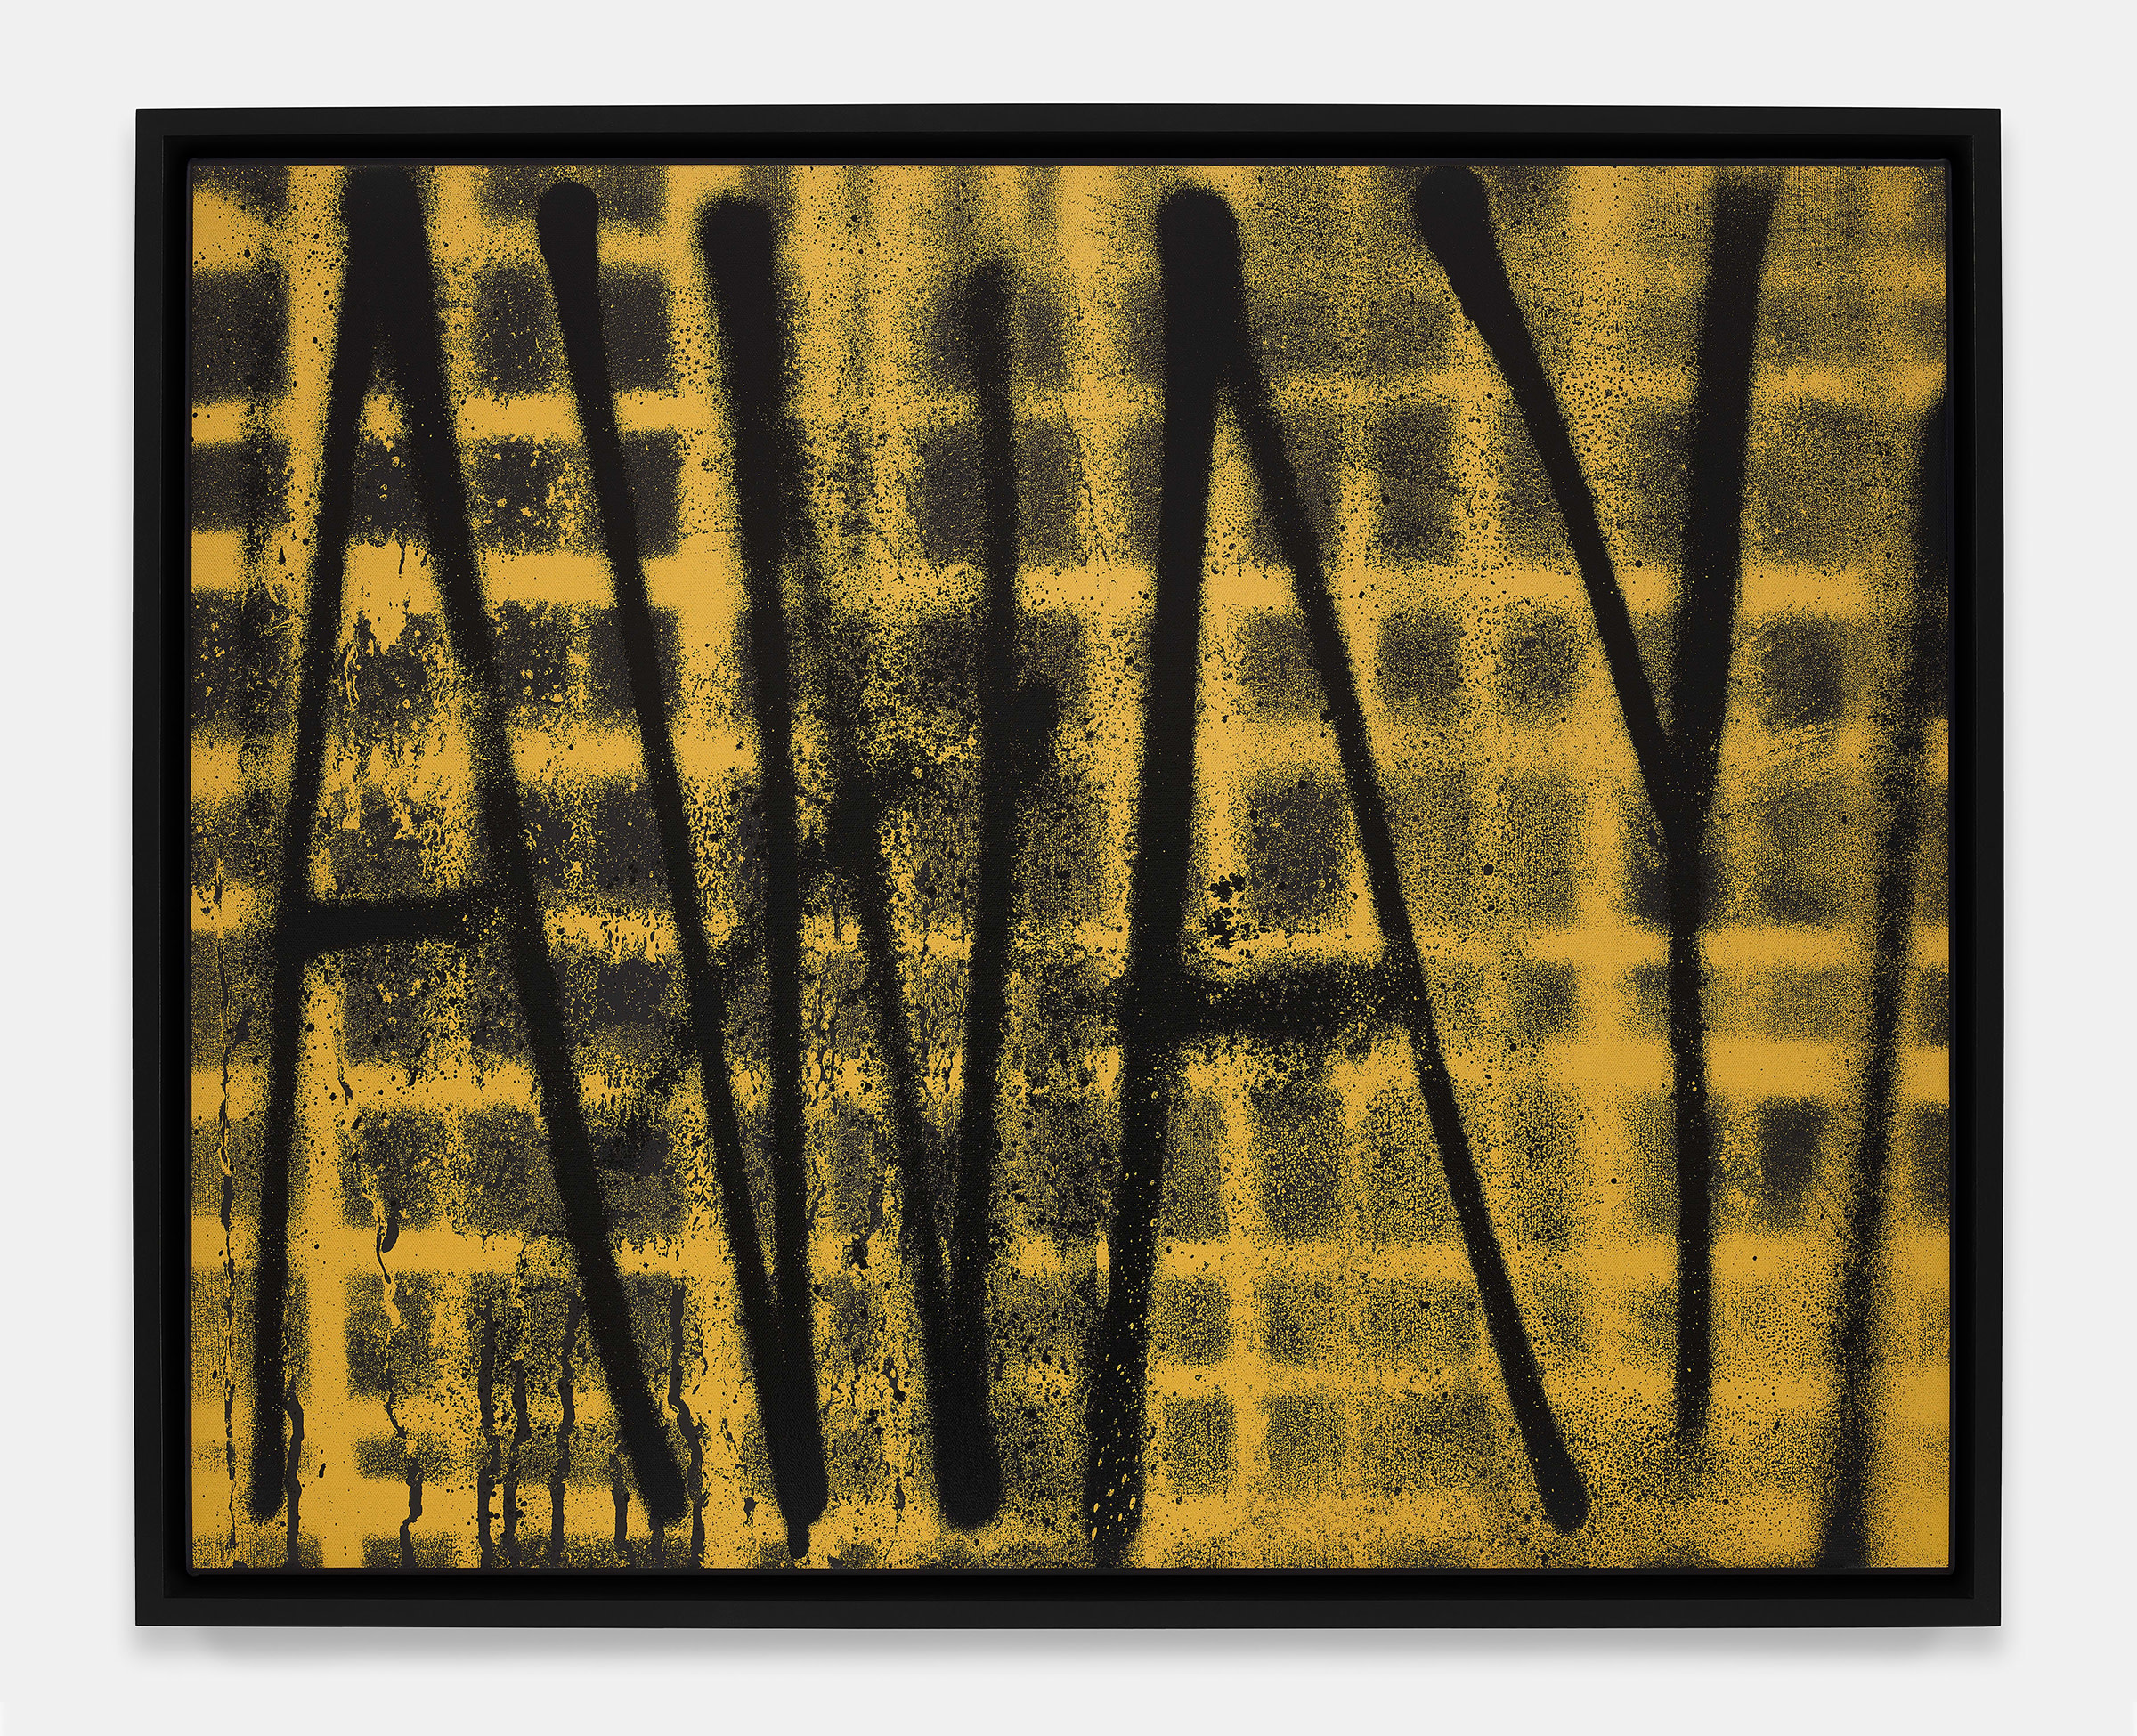 Adam Pendleton, AWAY/WALL, 2022. Presented at Art Basel Hong Kong and in 'OVR: Hong Kong' by David Kordansky Gallery (Los Angeles and New York City). Courtesy of the artist and David Kordansky Gallery.